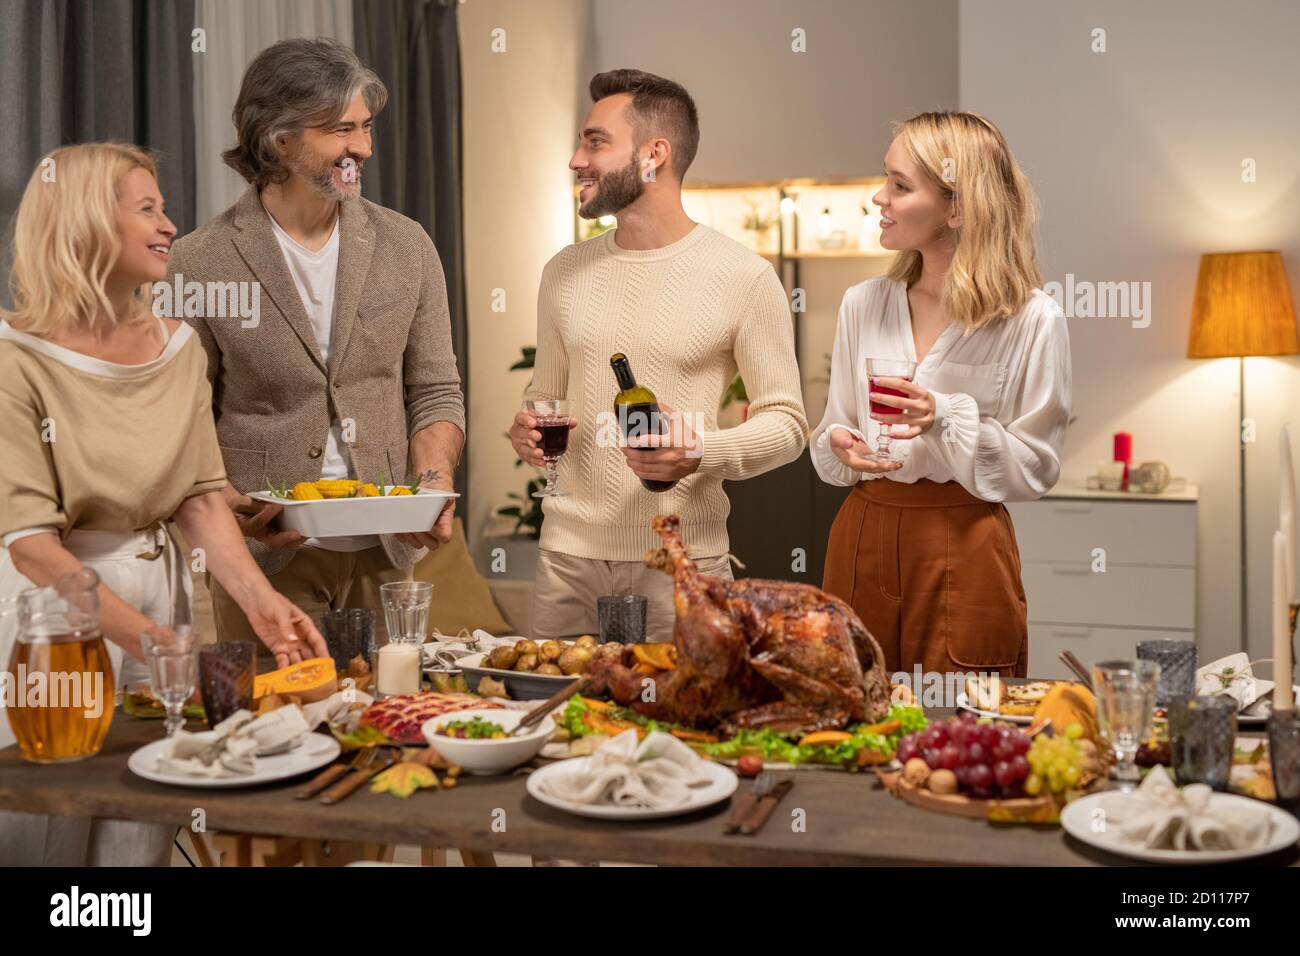 Glücklicher junger Mann mit Flasche und einem Glas Rotwein Betrachtet seine Eltern Stockfoto